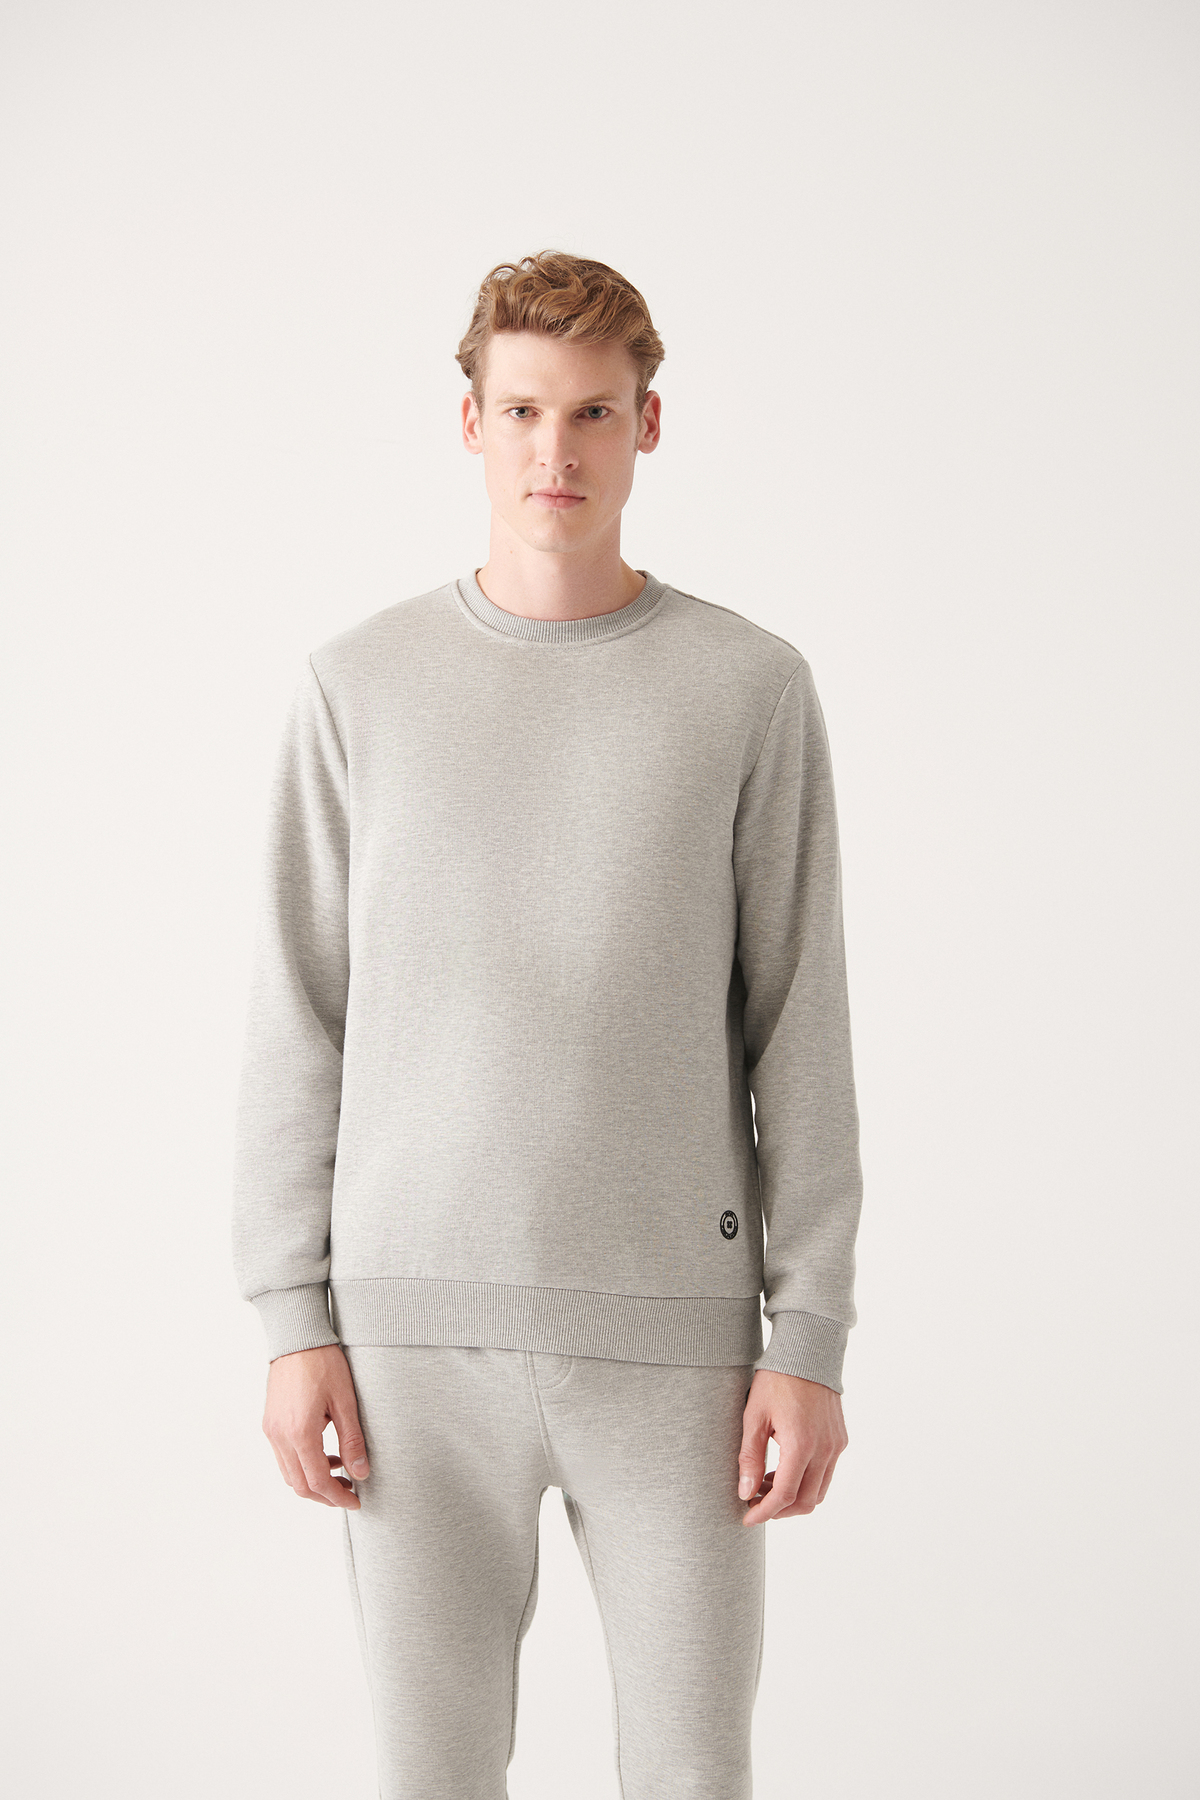 Levně Avva Gray Unisex Sweatshirt Crew Neck Fleece 3 Thread Cotton Regular Fit